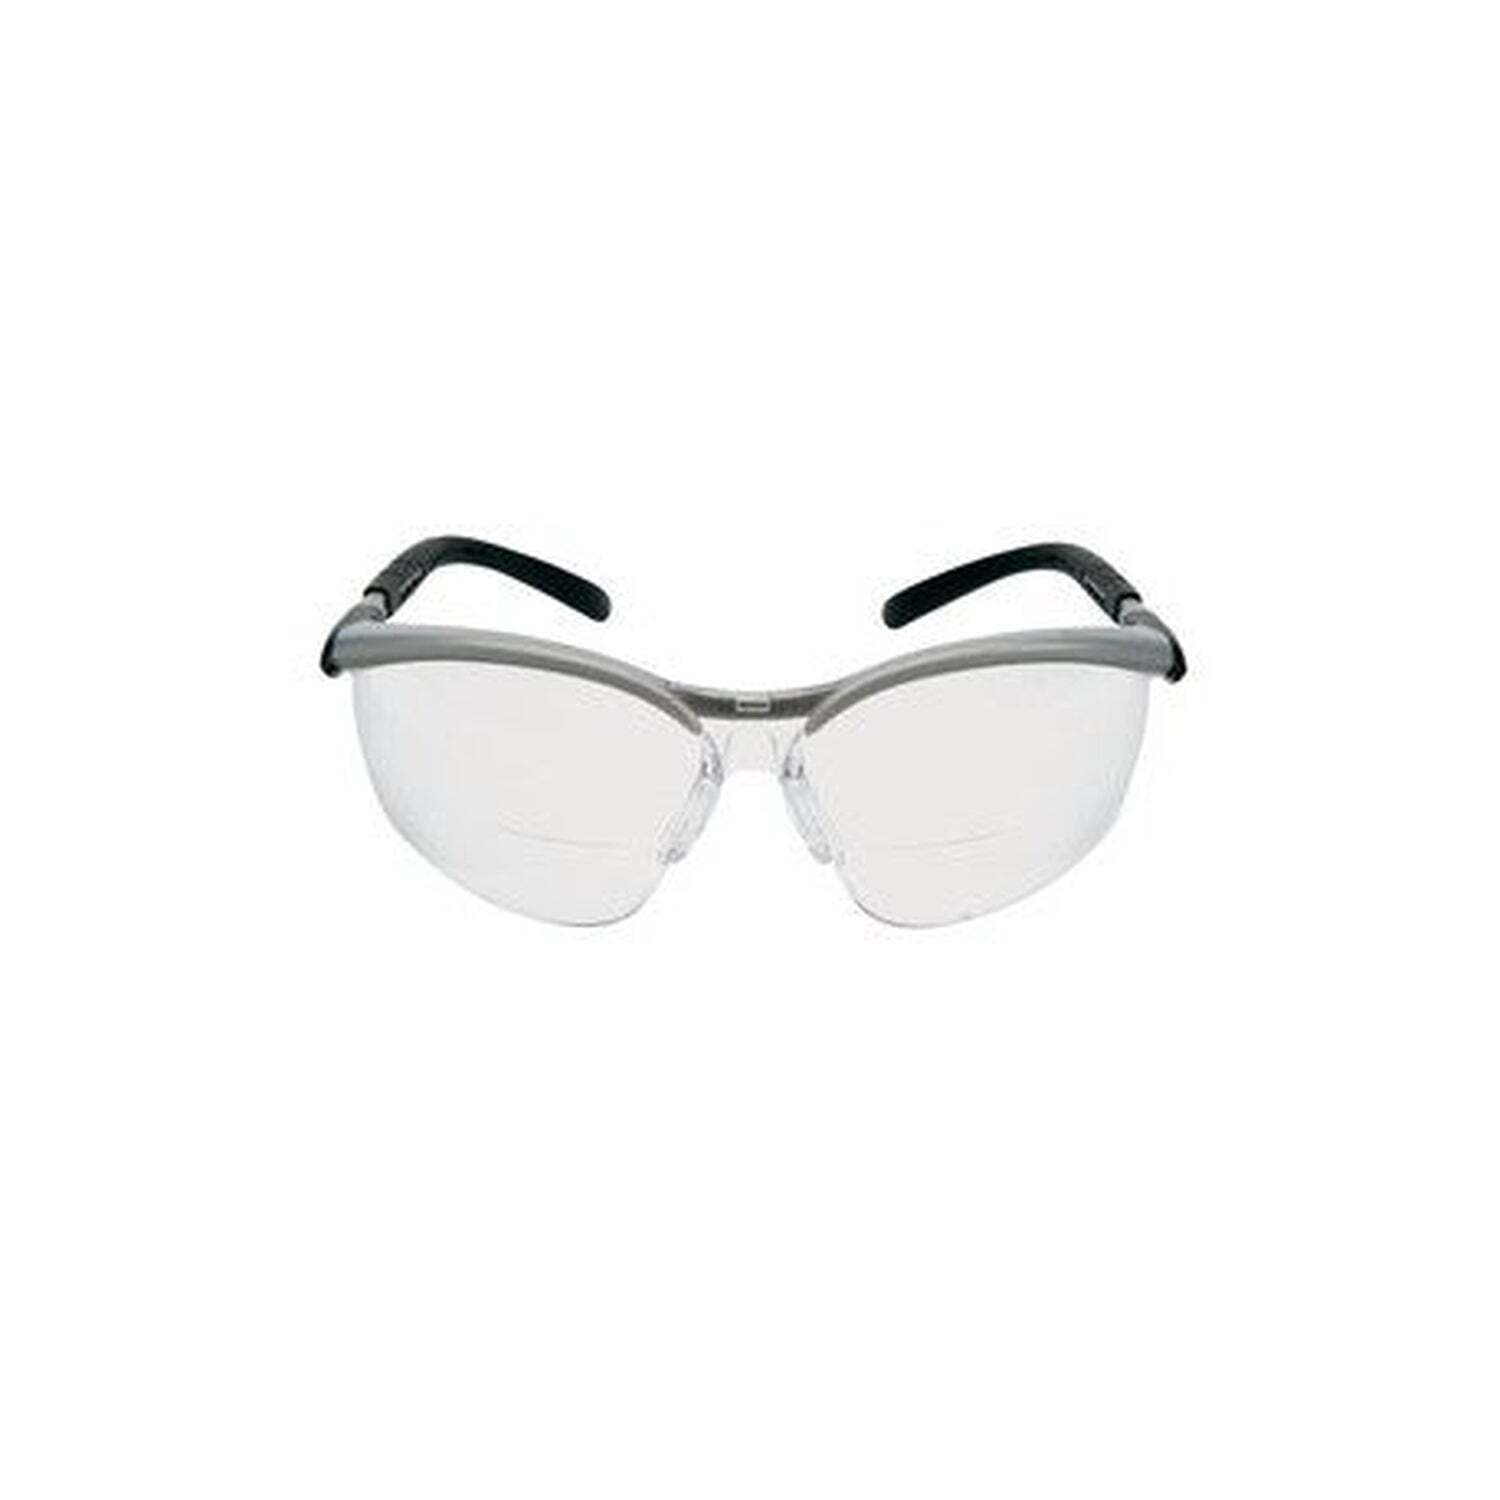 3M Veiligheidsbril Solus 2000 +2.0 - S2020AF-BLU